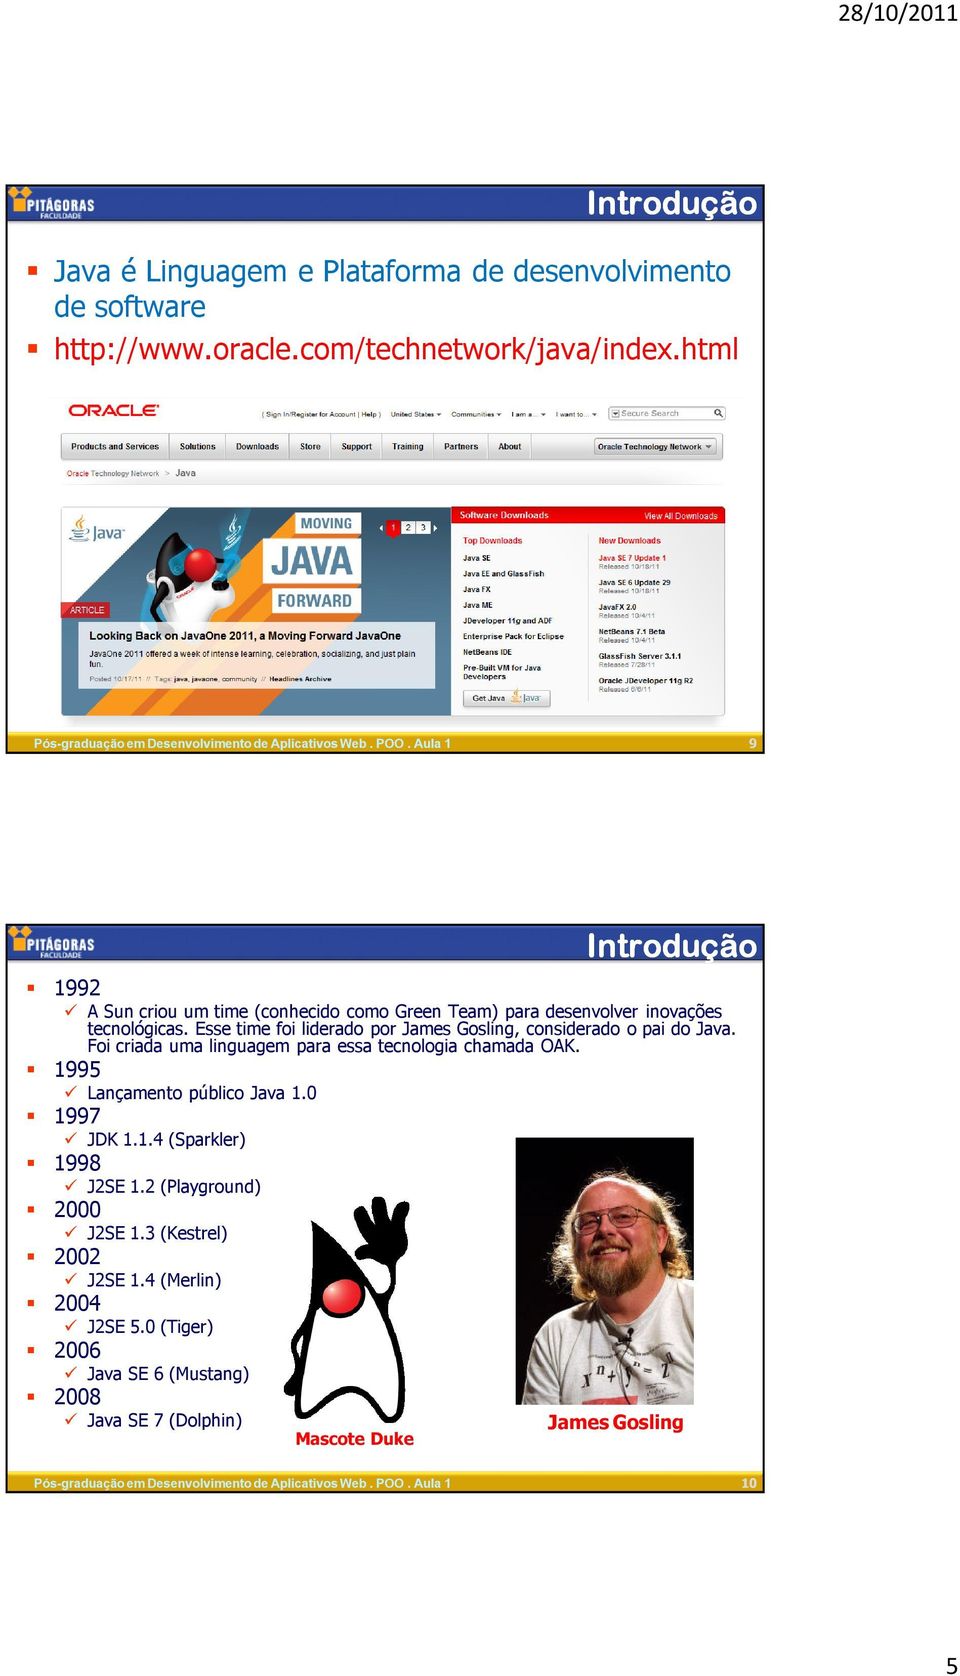 Esse time foi liderado por James Gosling, considerado o pai do Java. Foi criada uma linguagem para essa tecnologia chamada OAK.